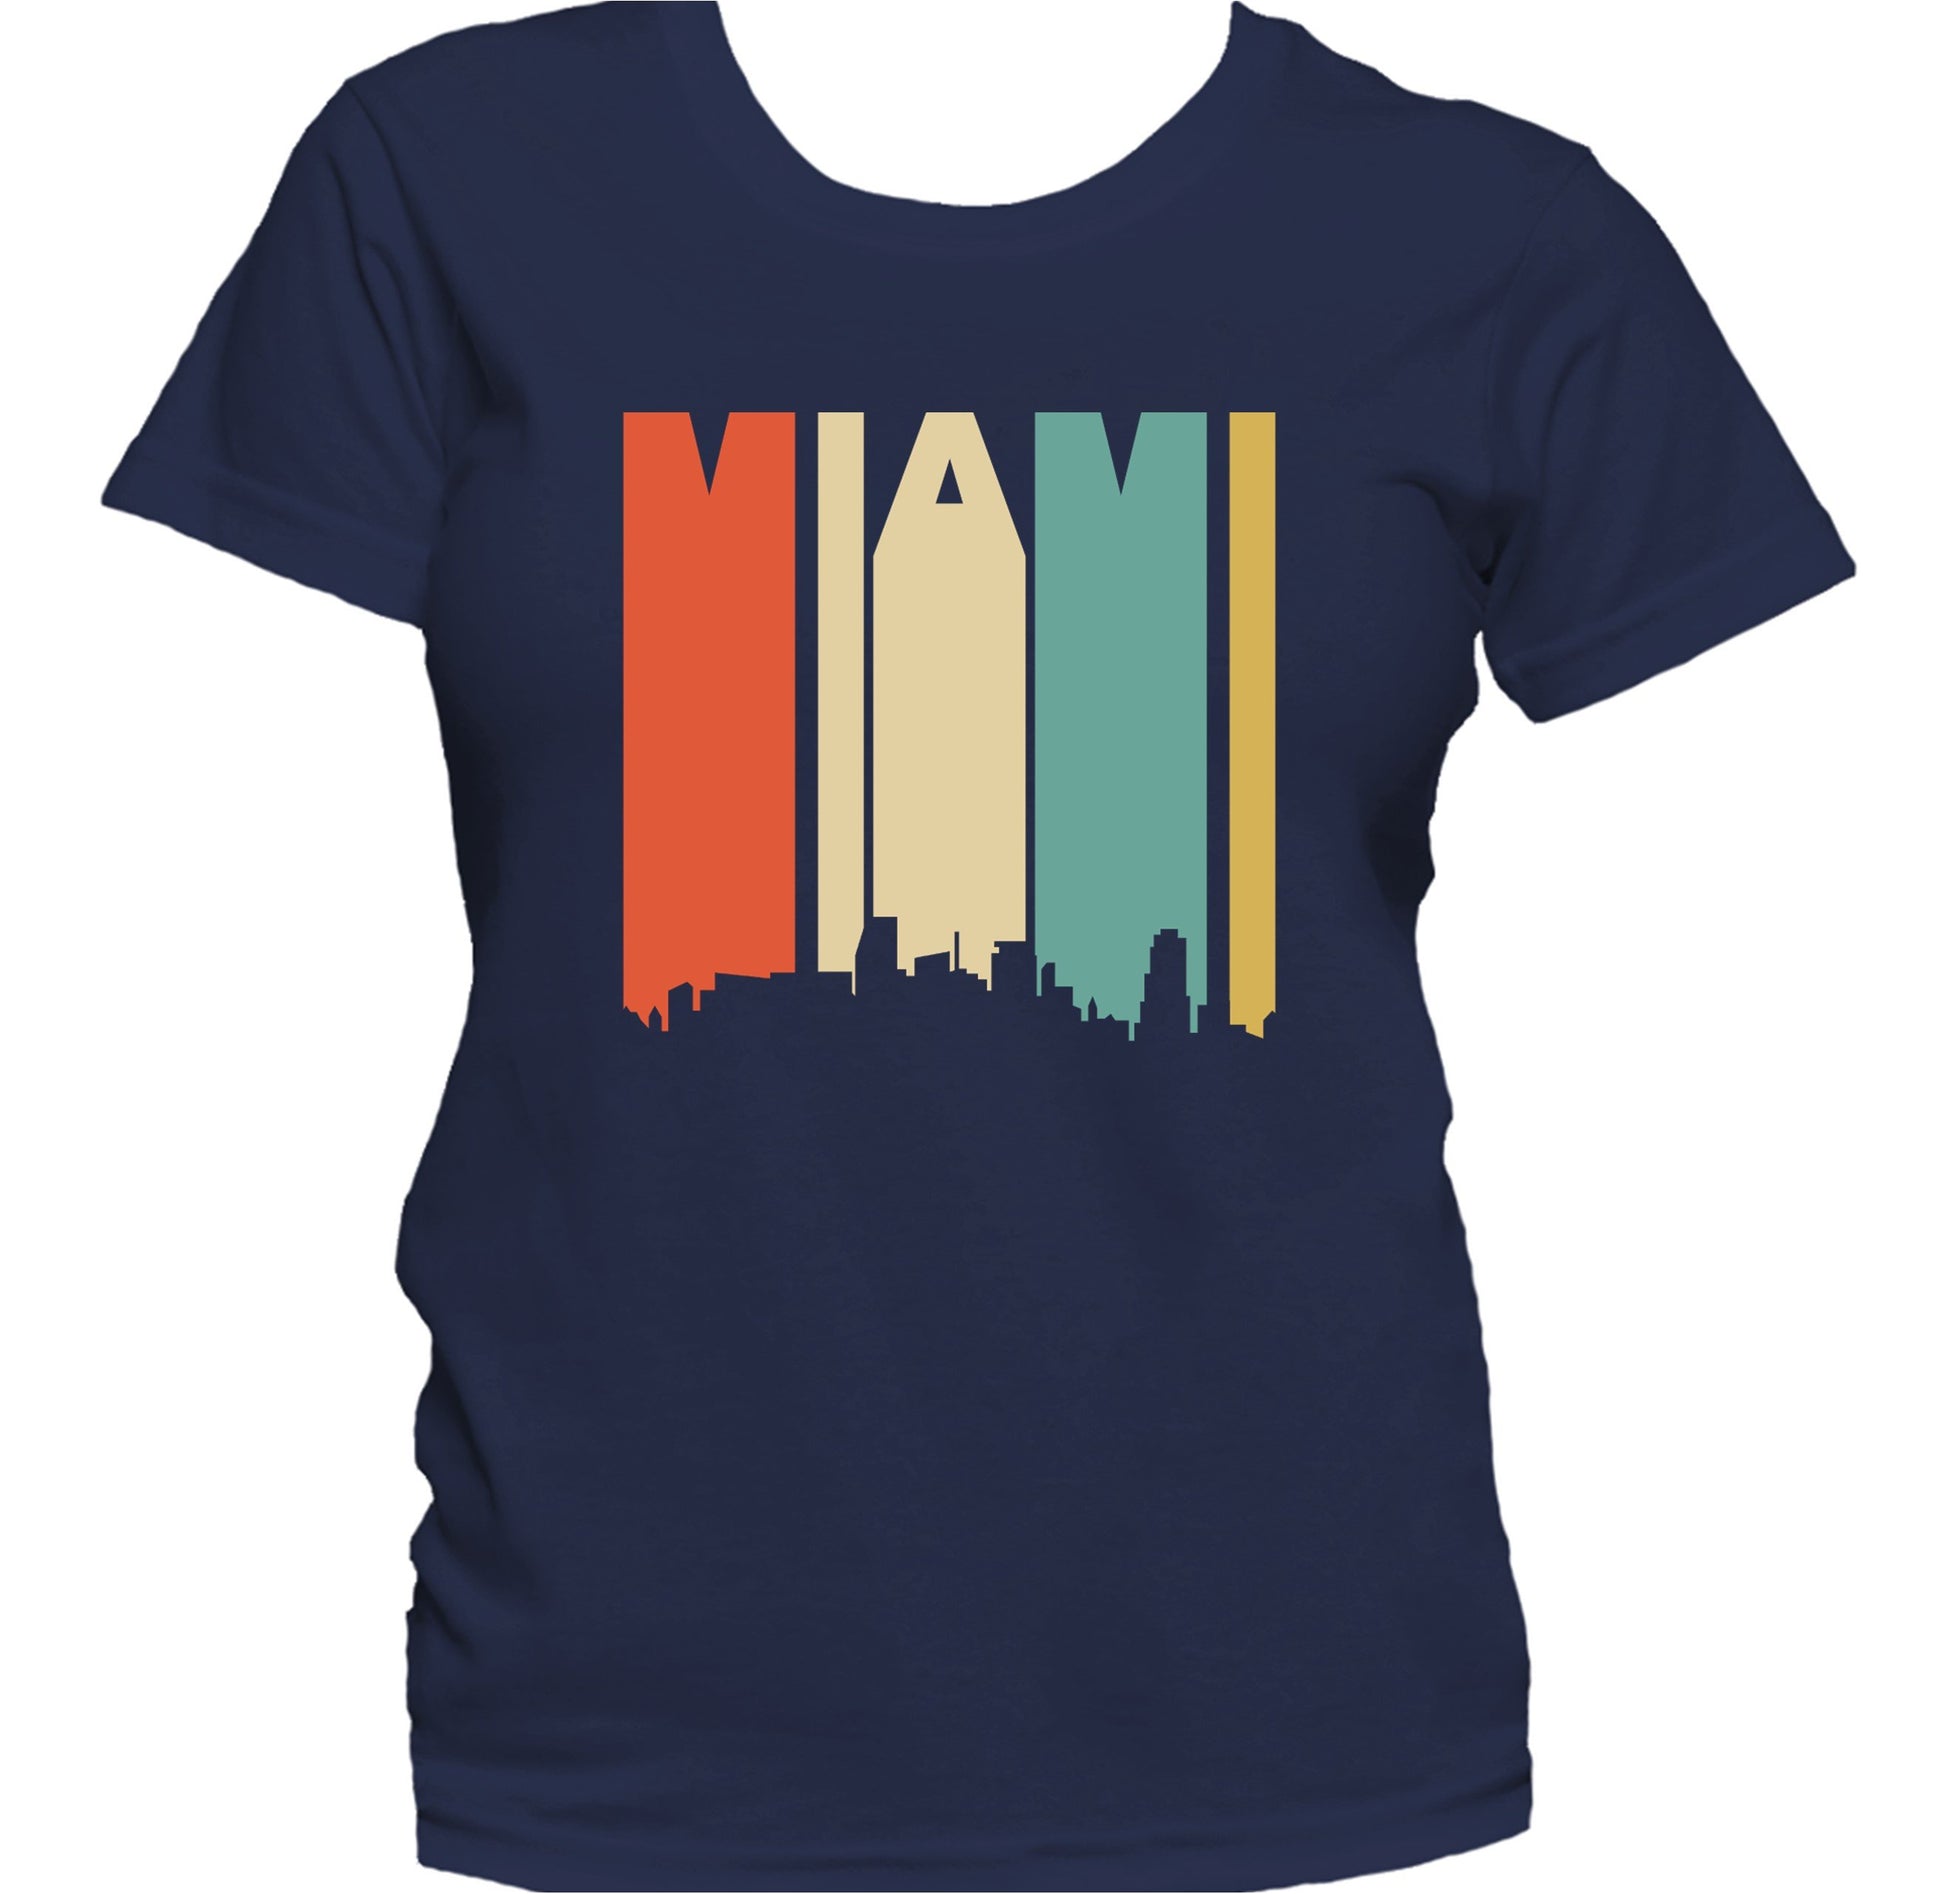 Retro 1970's Style Miami Florida Skyline Women's T-Shirt